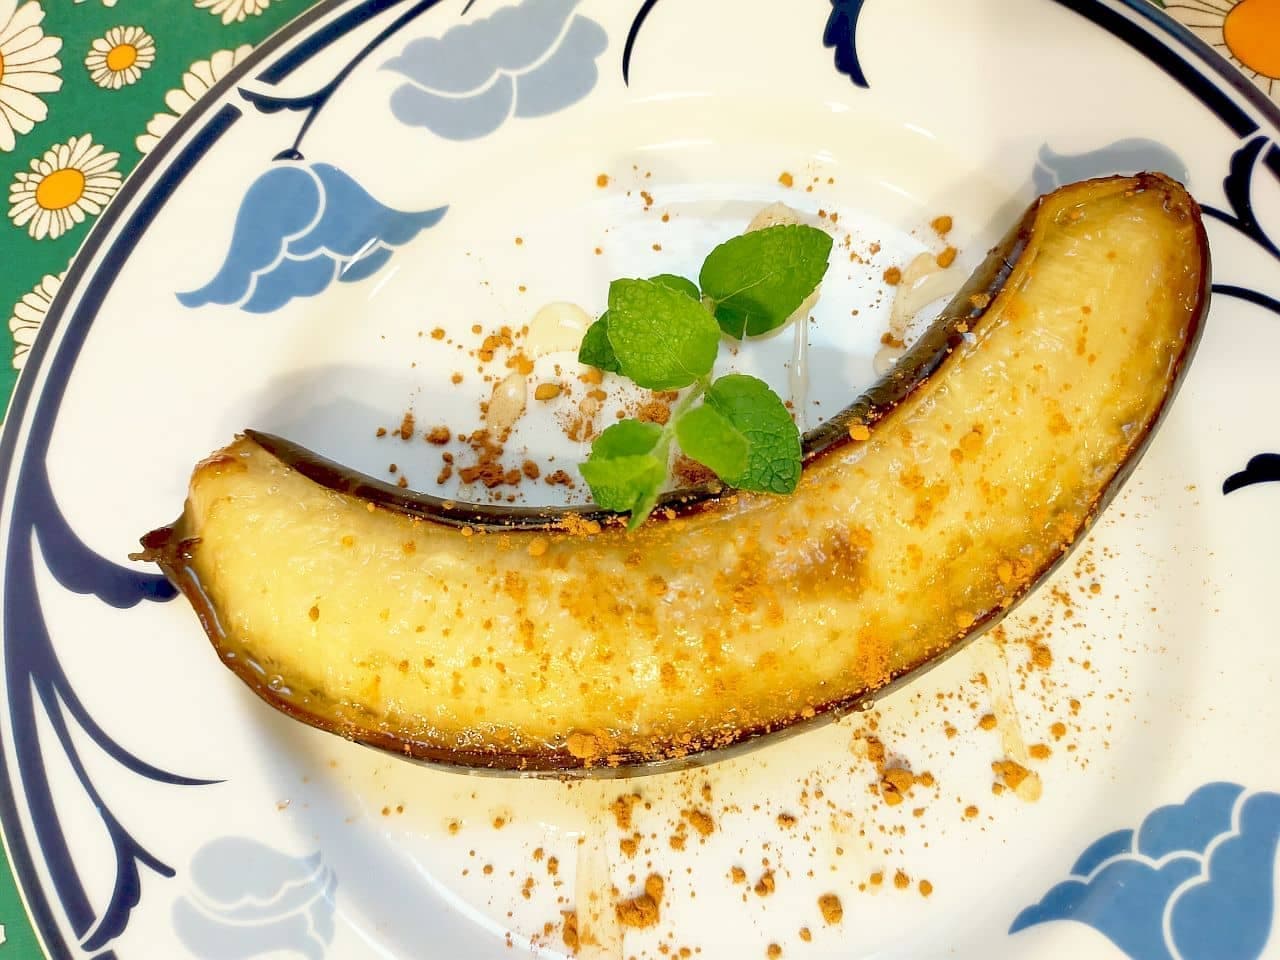 「皮ごと焼きバナナ」の超簡単レシピ